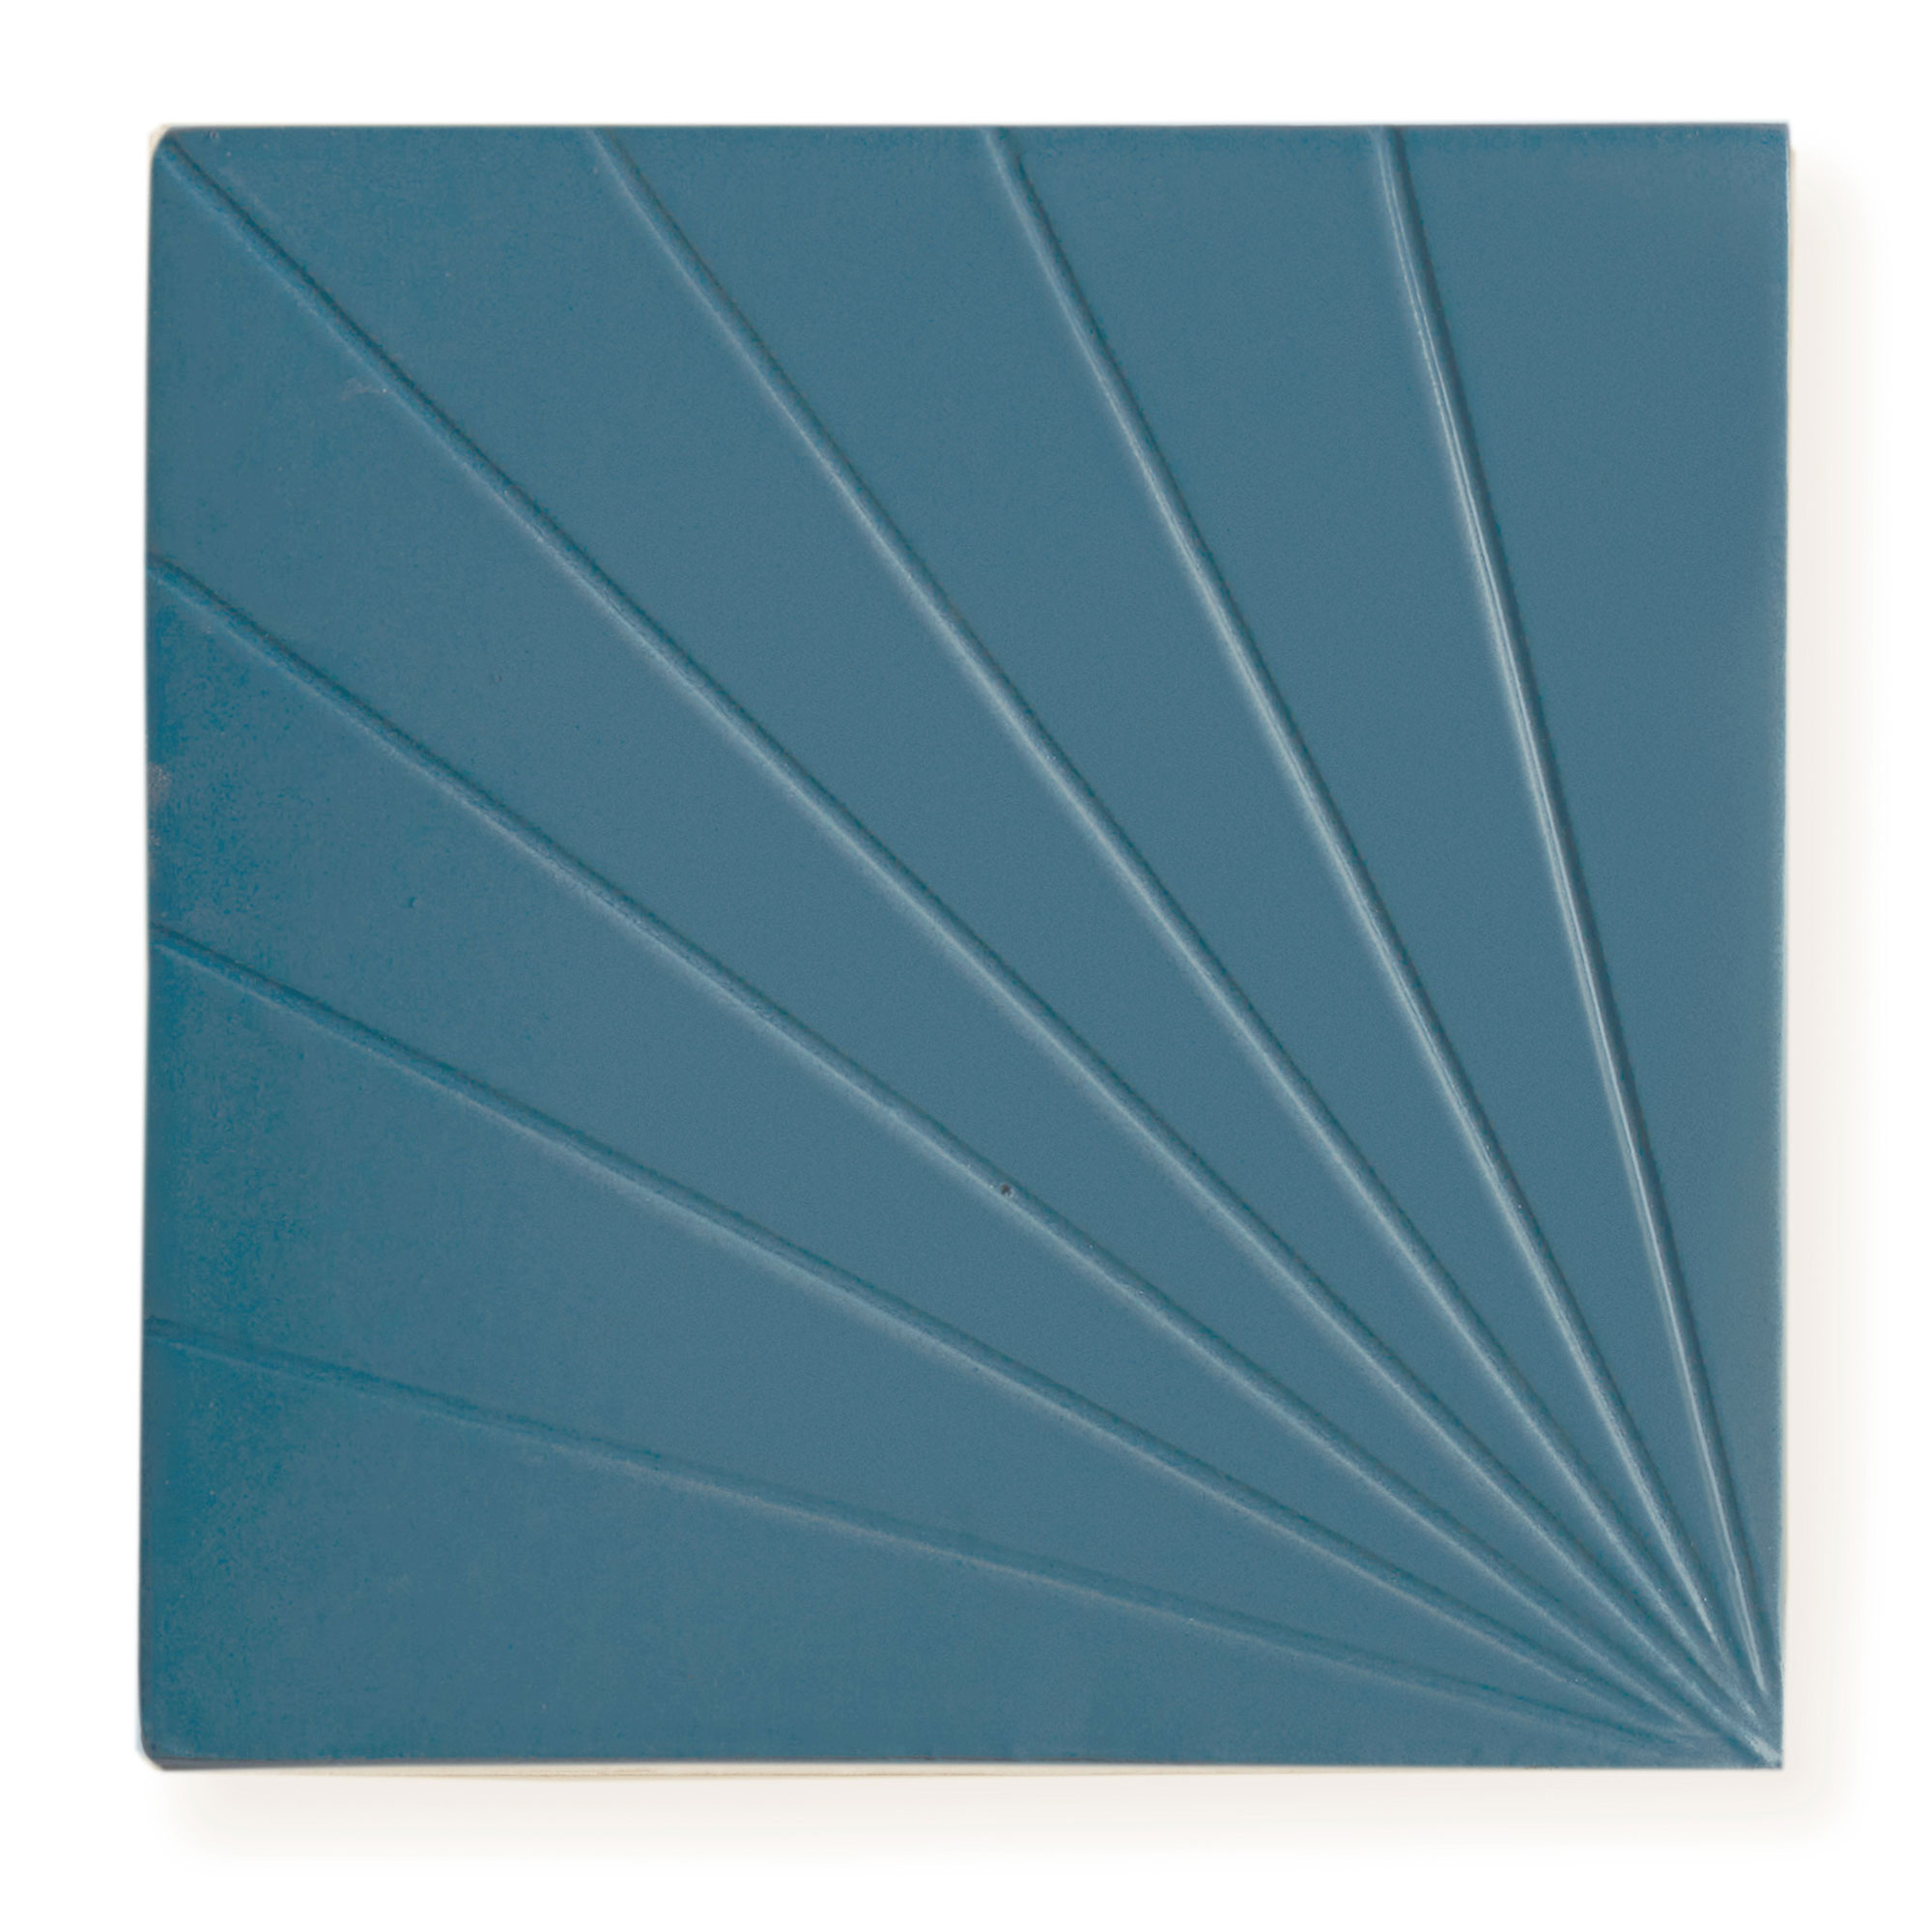 Sample: Tulum Blue 6x6 - Dimensional Relief Artisan Ceramic Tile